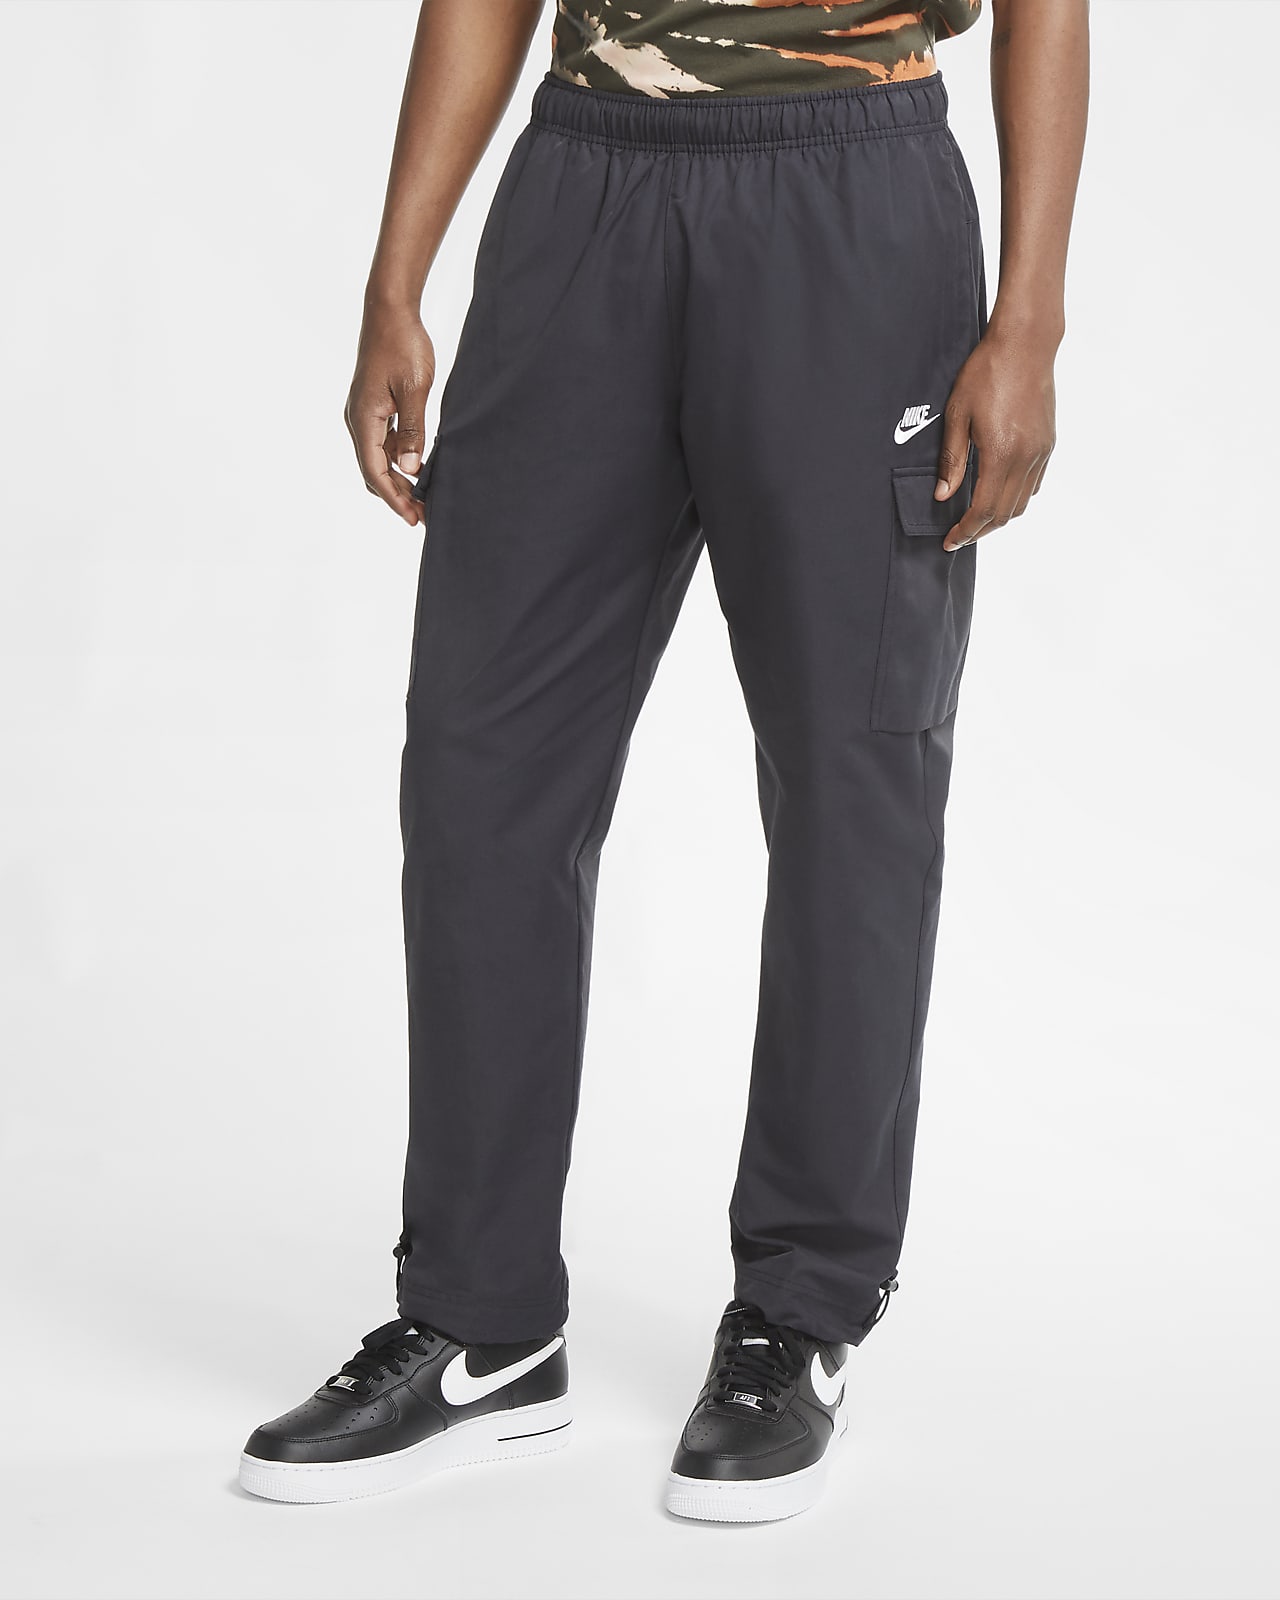 Nike Sportswear Men's Woven Trousers 